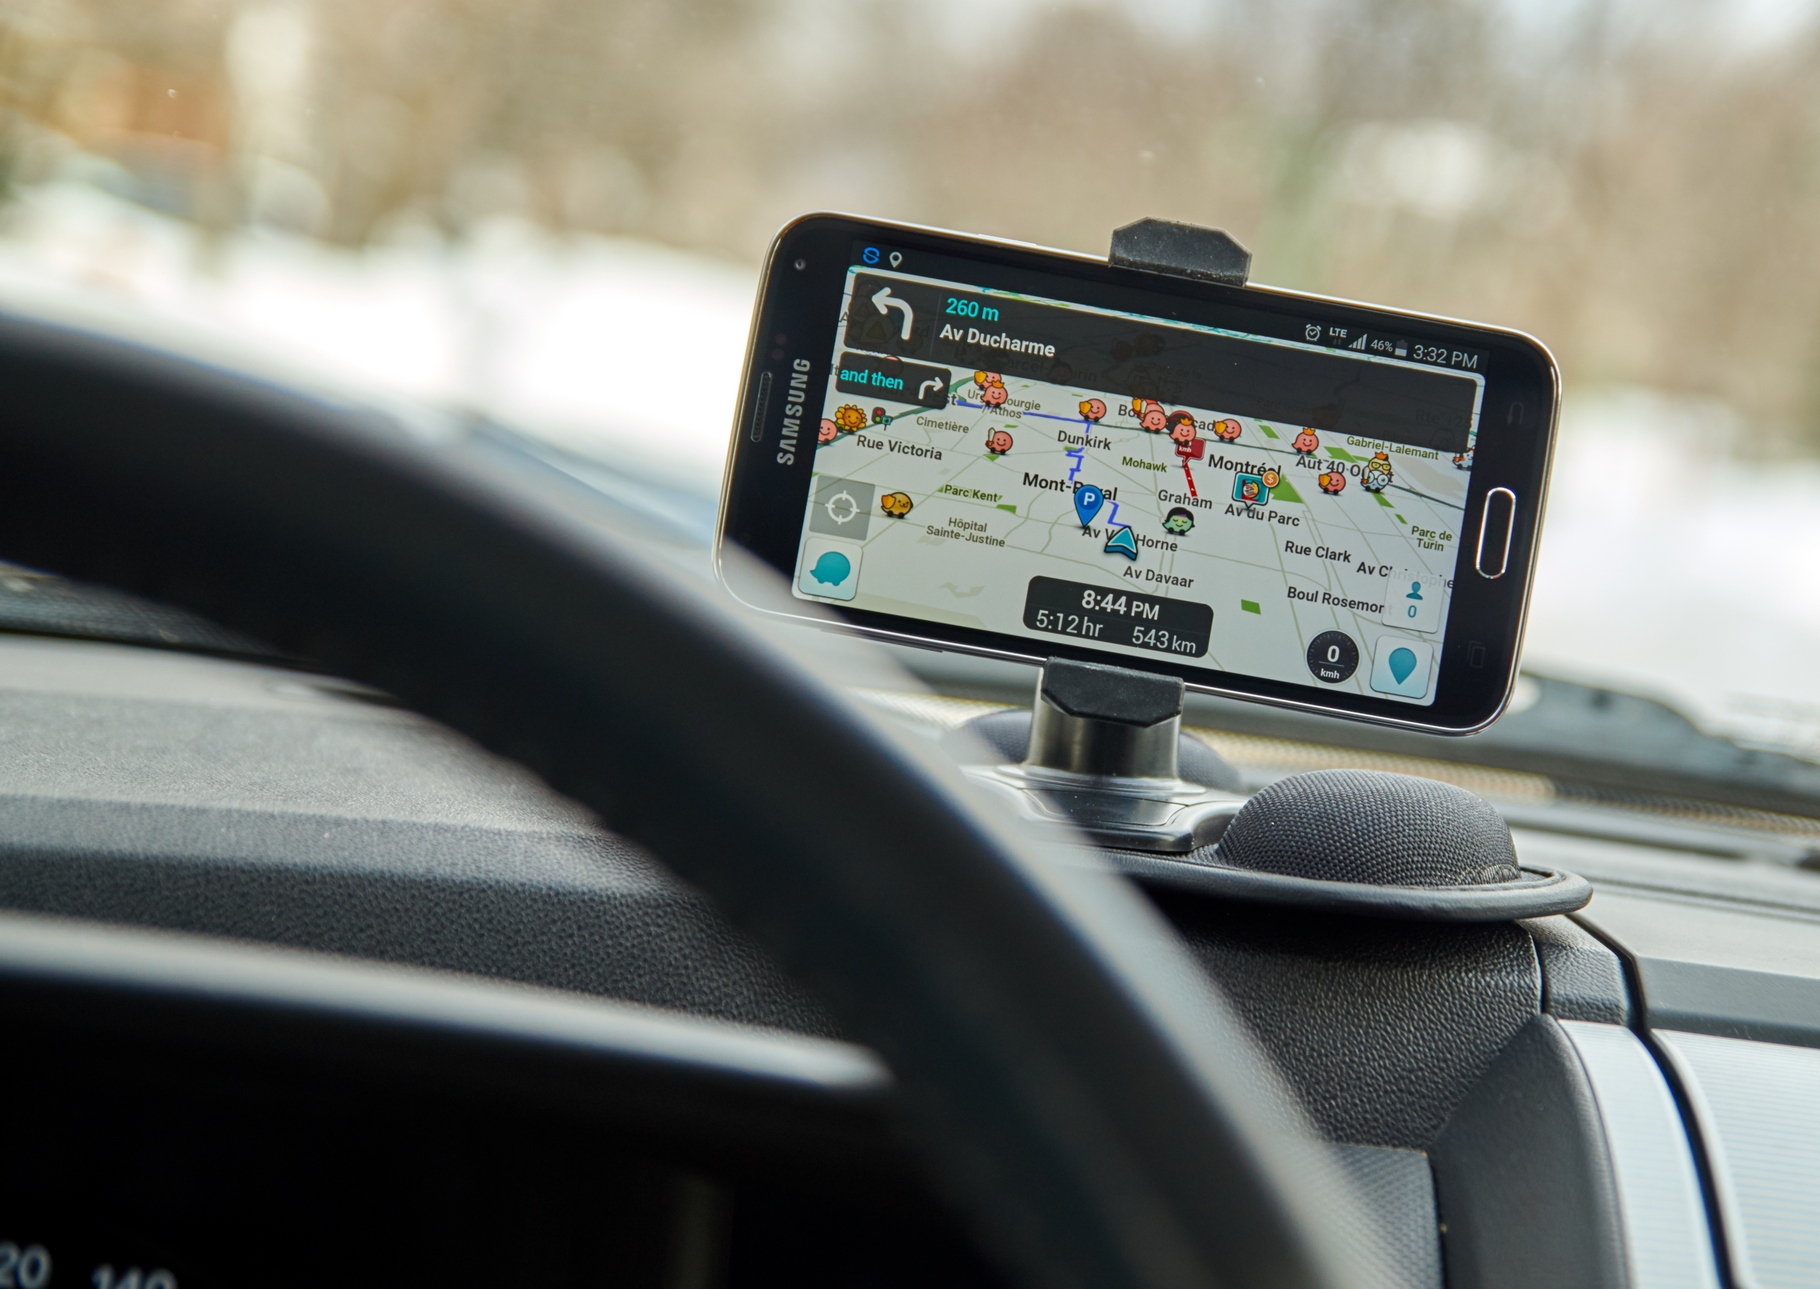 Les applications de type GPS montrent l'exemple en ôtant la fonction qui permet de repérer la présence des policiers et des gendarmes. © Dennizn, Shutterstock